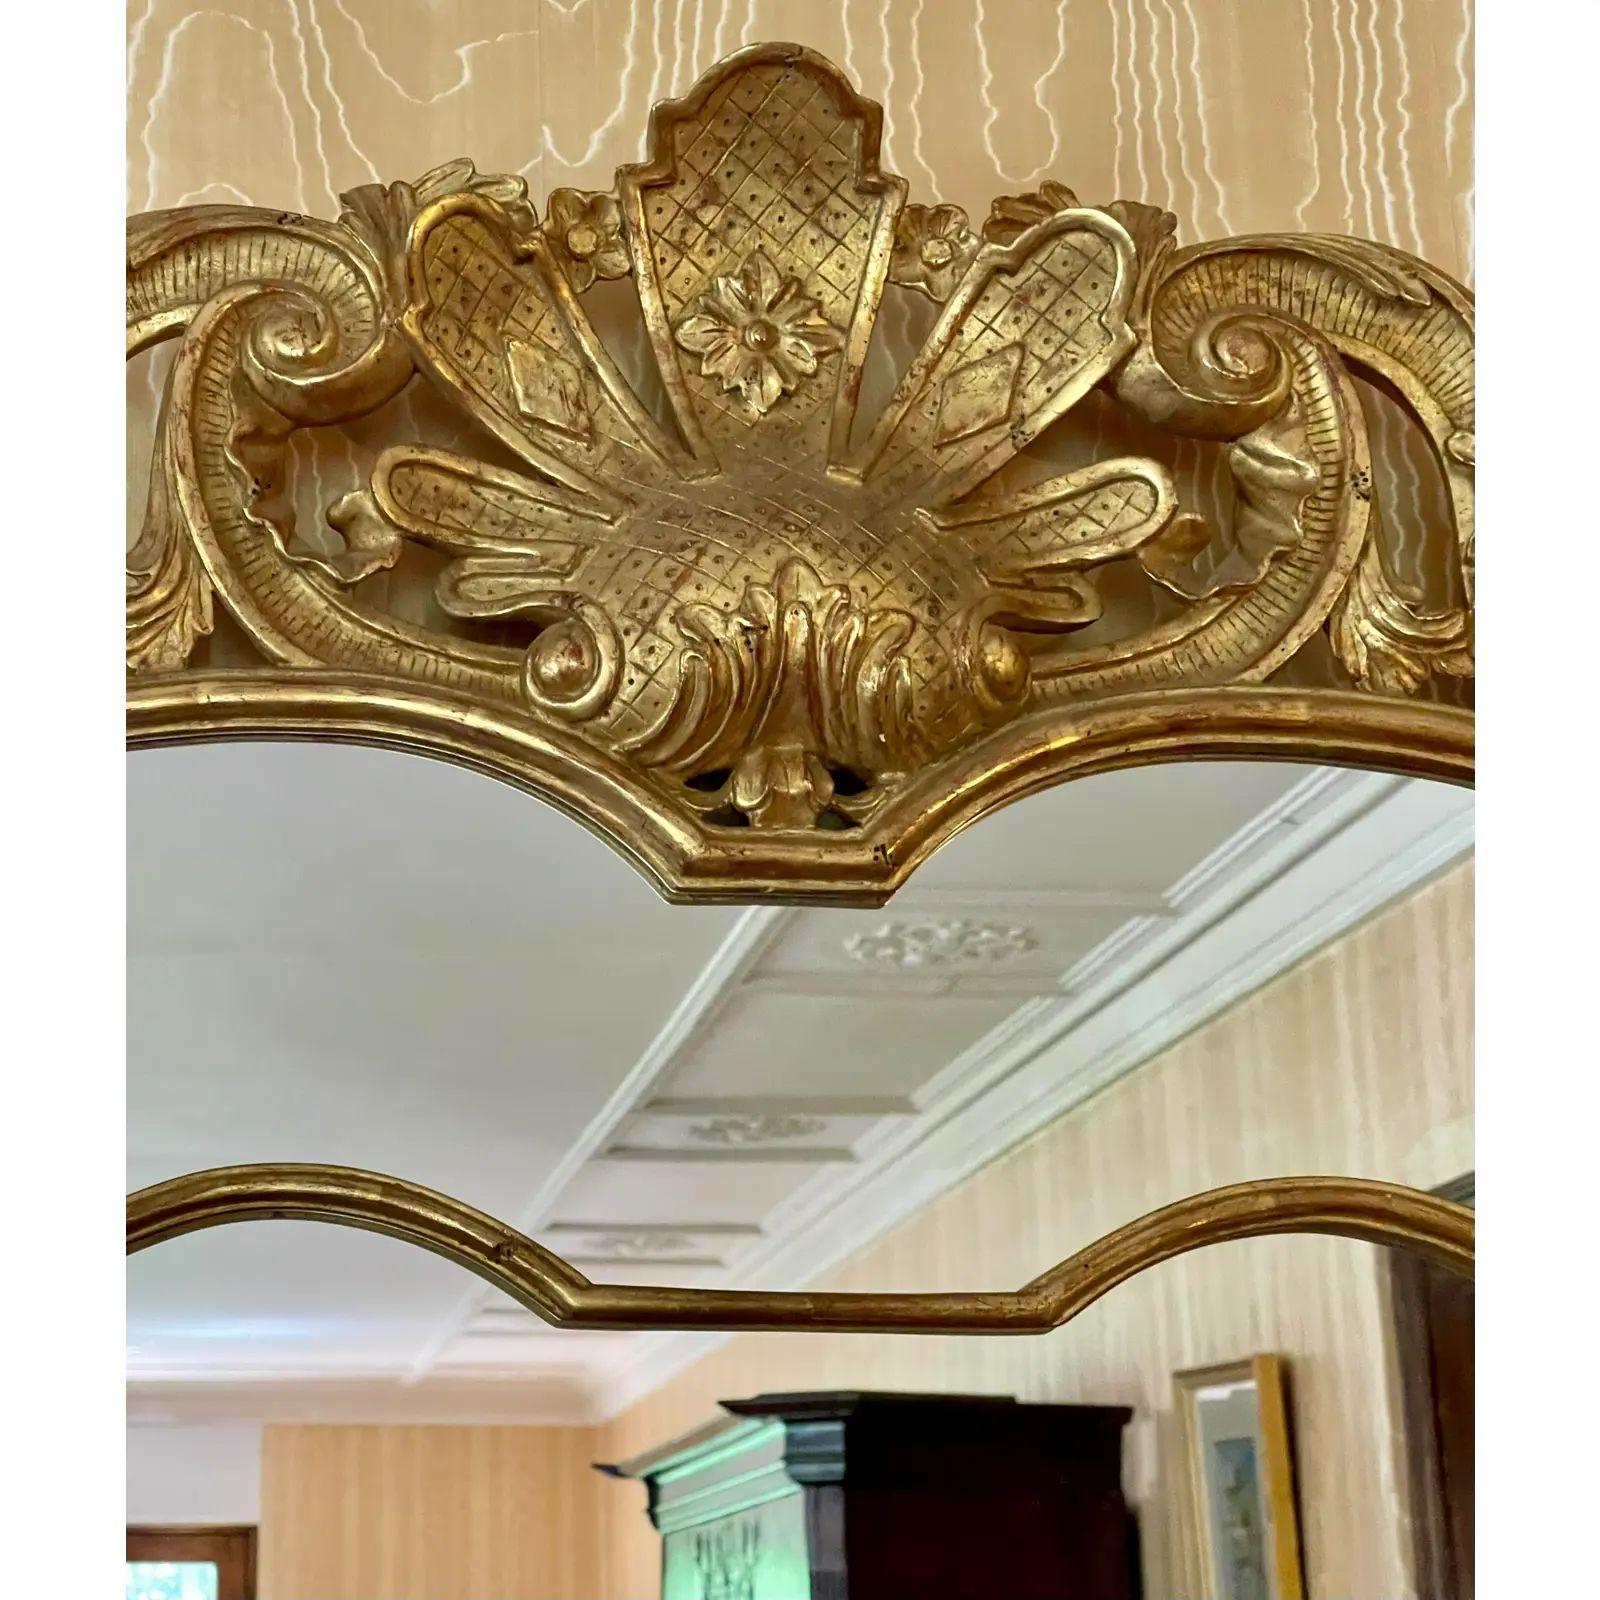 Miroir rococo en bois doré de style Régence par Villa Melrose. Doté d'une finition dorée exquise et très coûteuse avec une forme décorative élaborée en bois sculpté.

Informations complémentaires : 
Matériaux : Bois doré, Miroir
Couleur :